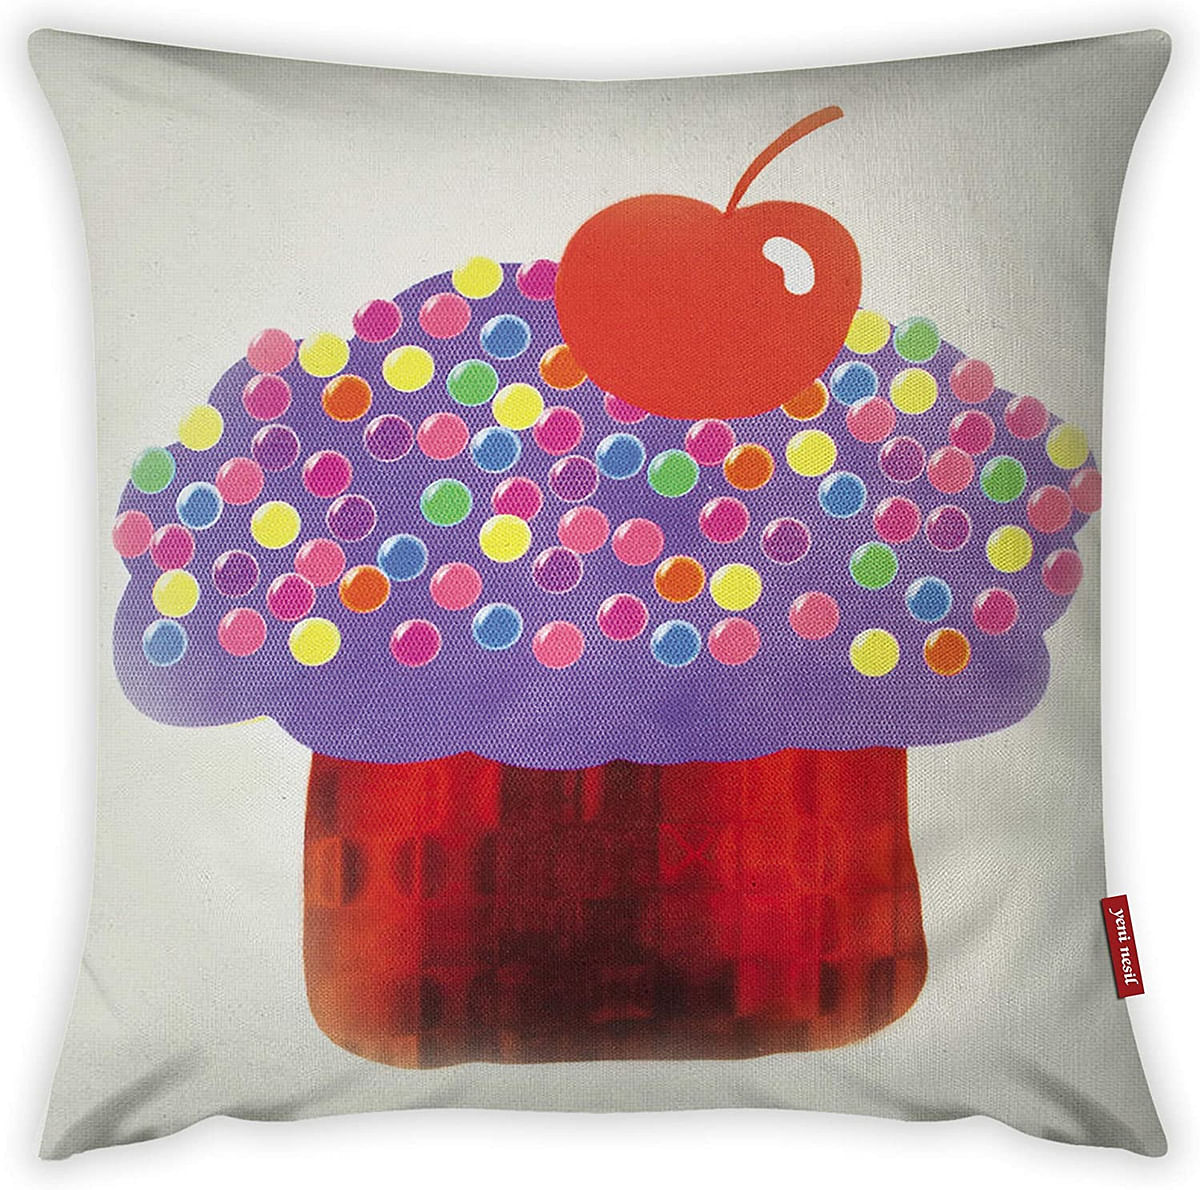 Mon Desire Decorative Throw Pillow Cover, Multi-Colour, 44 x 44 cm, MDSYST1460